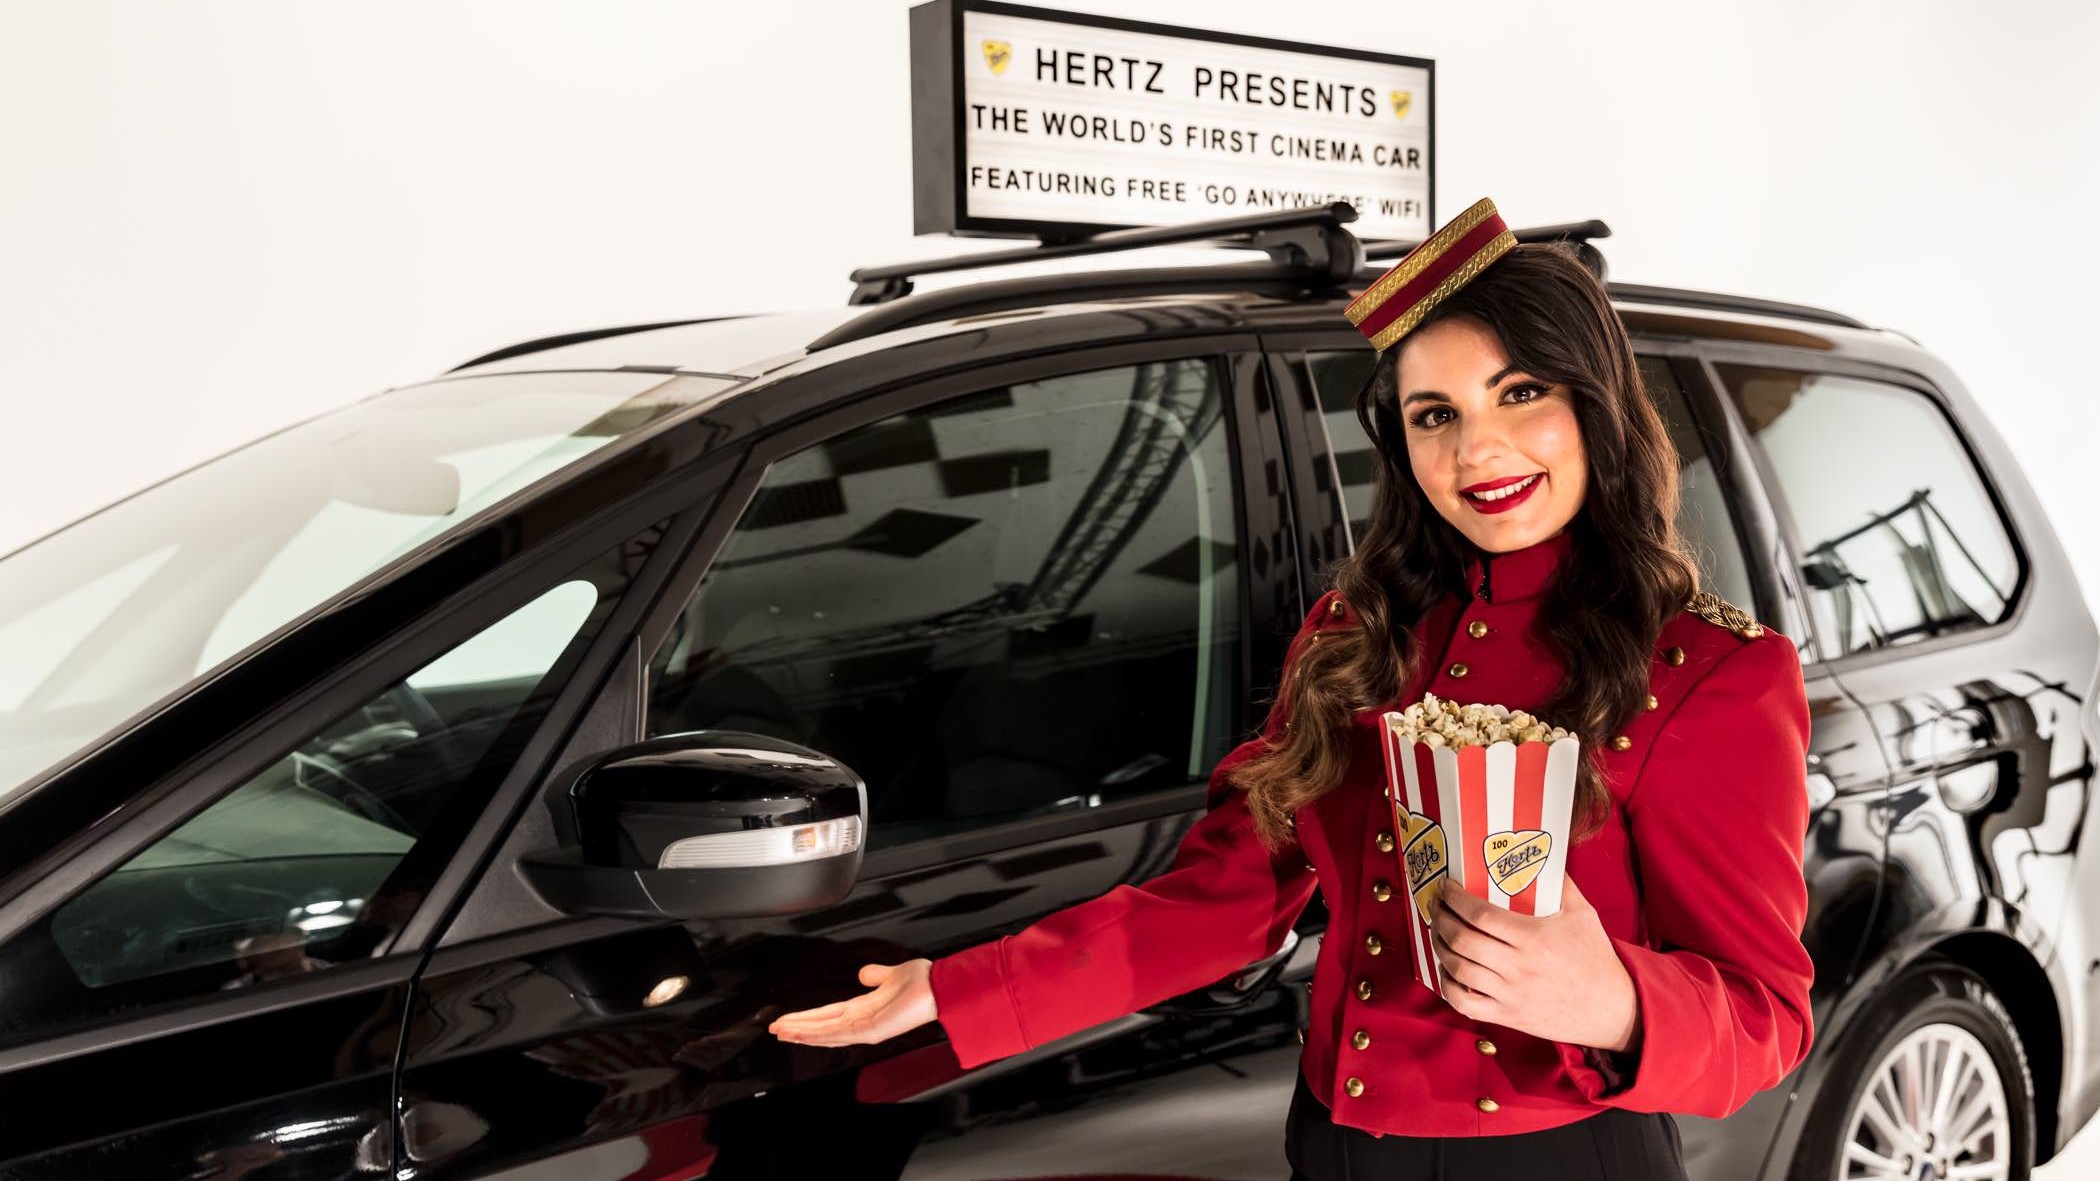 Hertz, arriva la prima Cinema Car al mondo